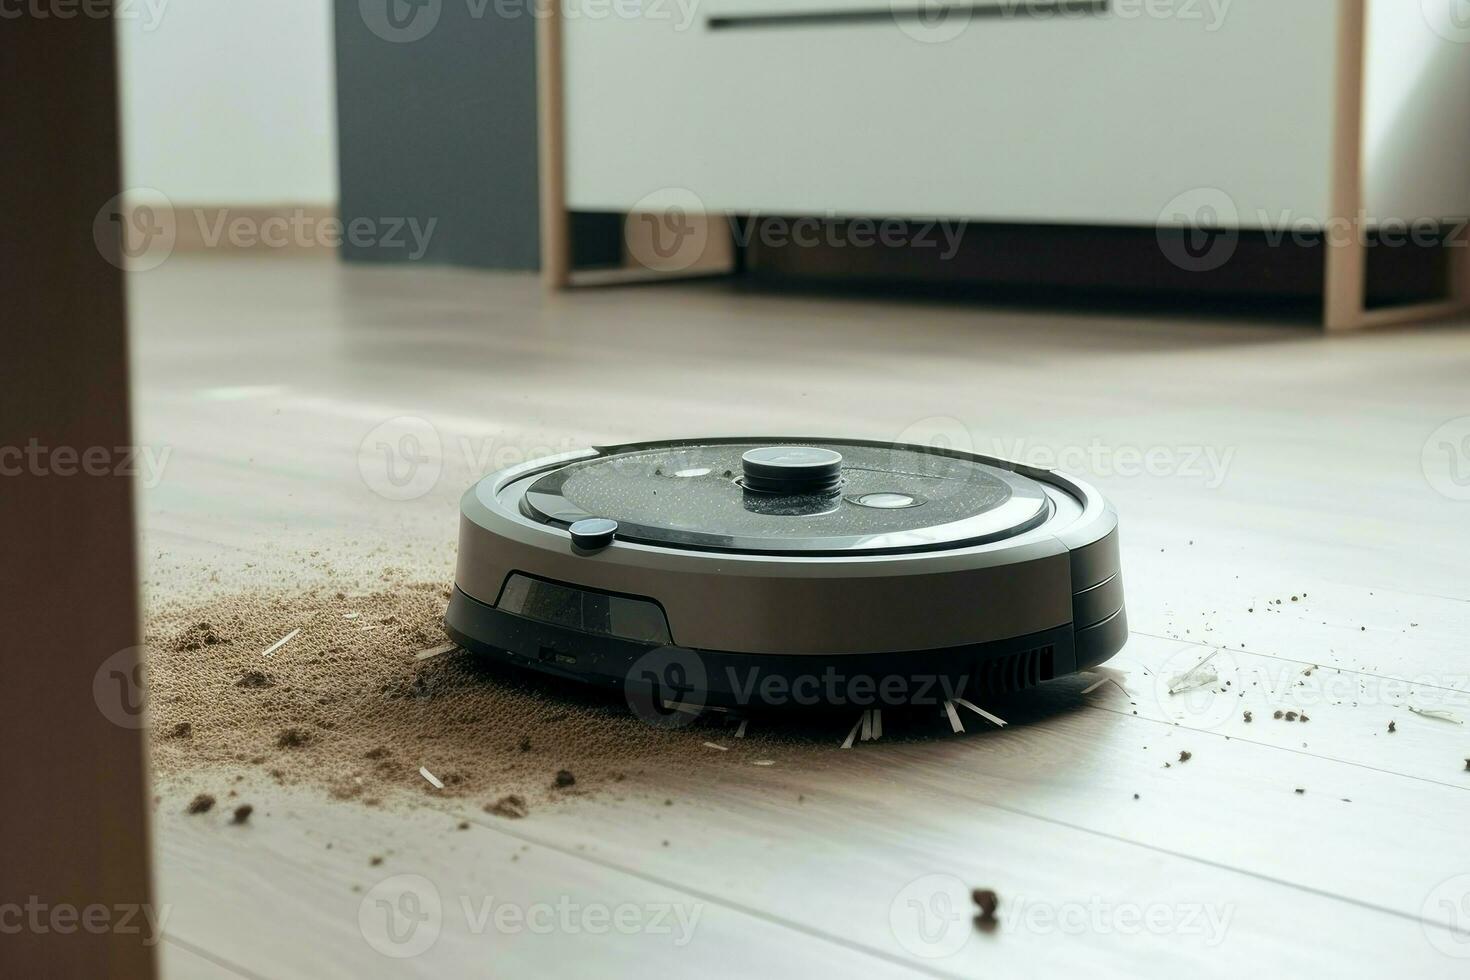 Robot vacuum cleaner. Generate AI photo